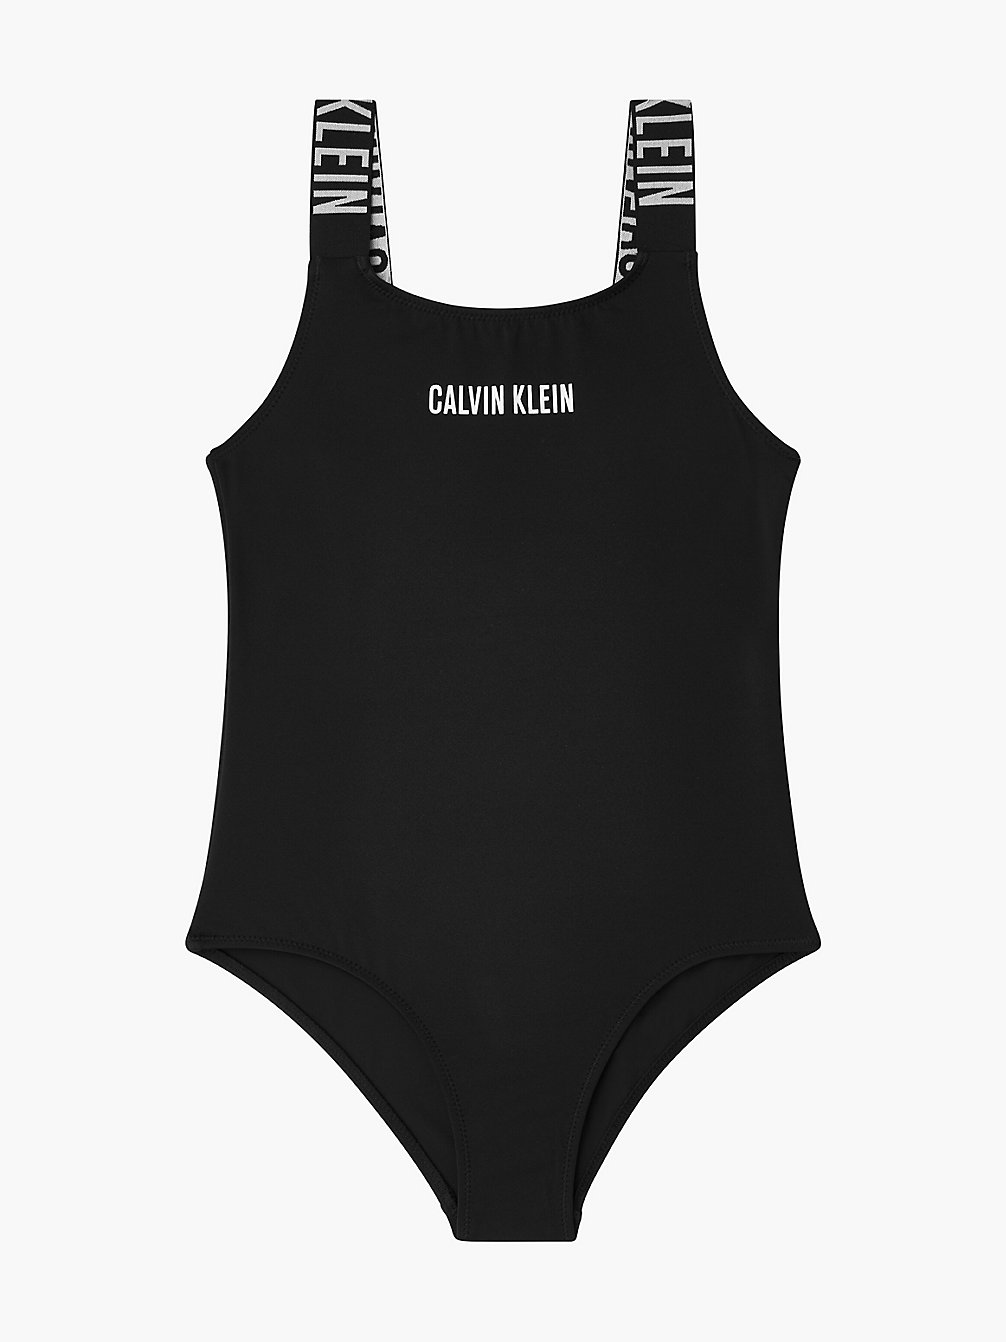 PVH BLACK Girls Swimsuit - Intense Power undefined girls Calvin Klein